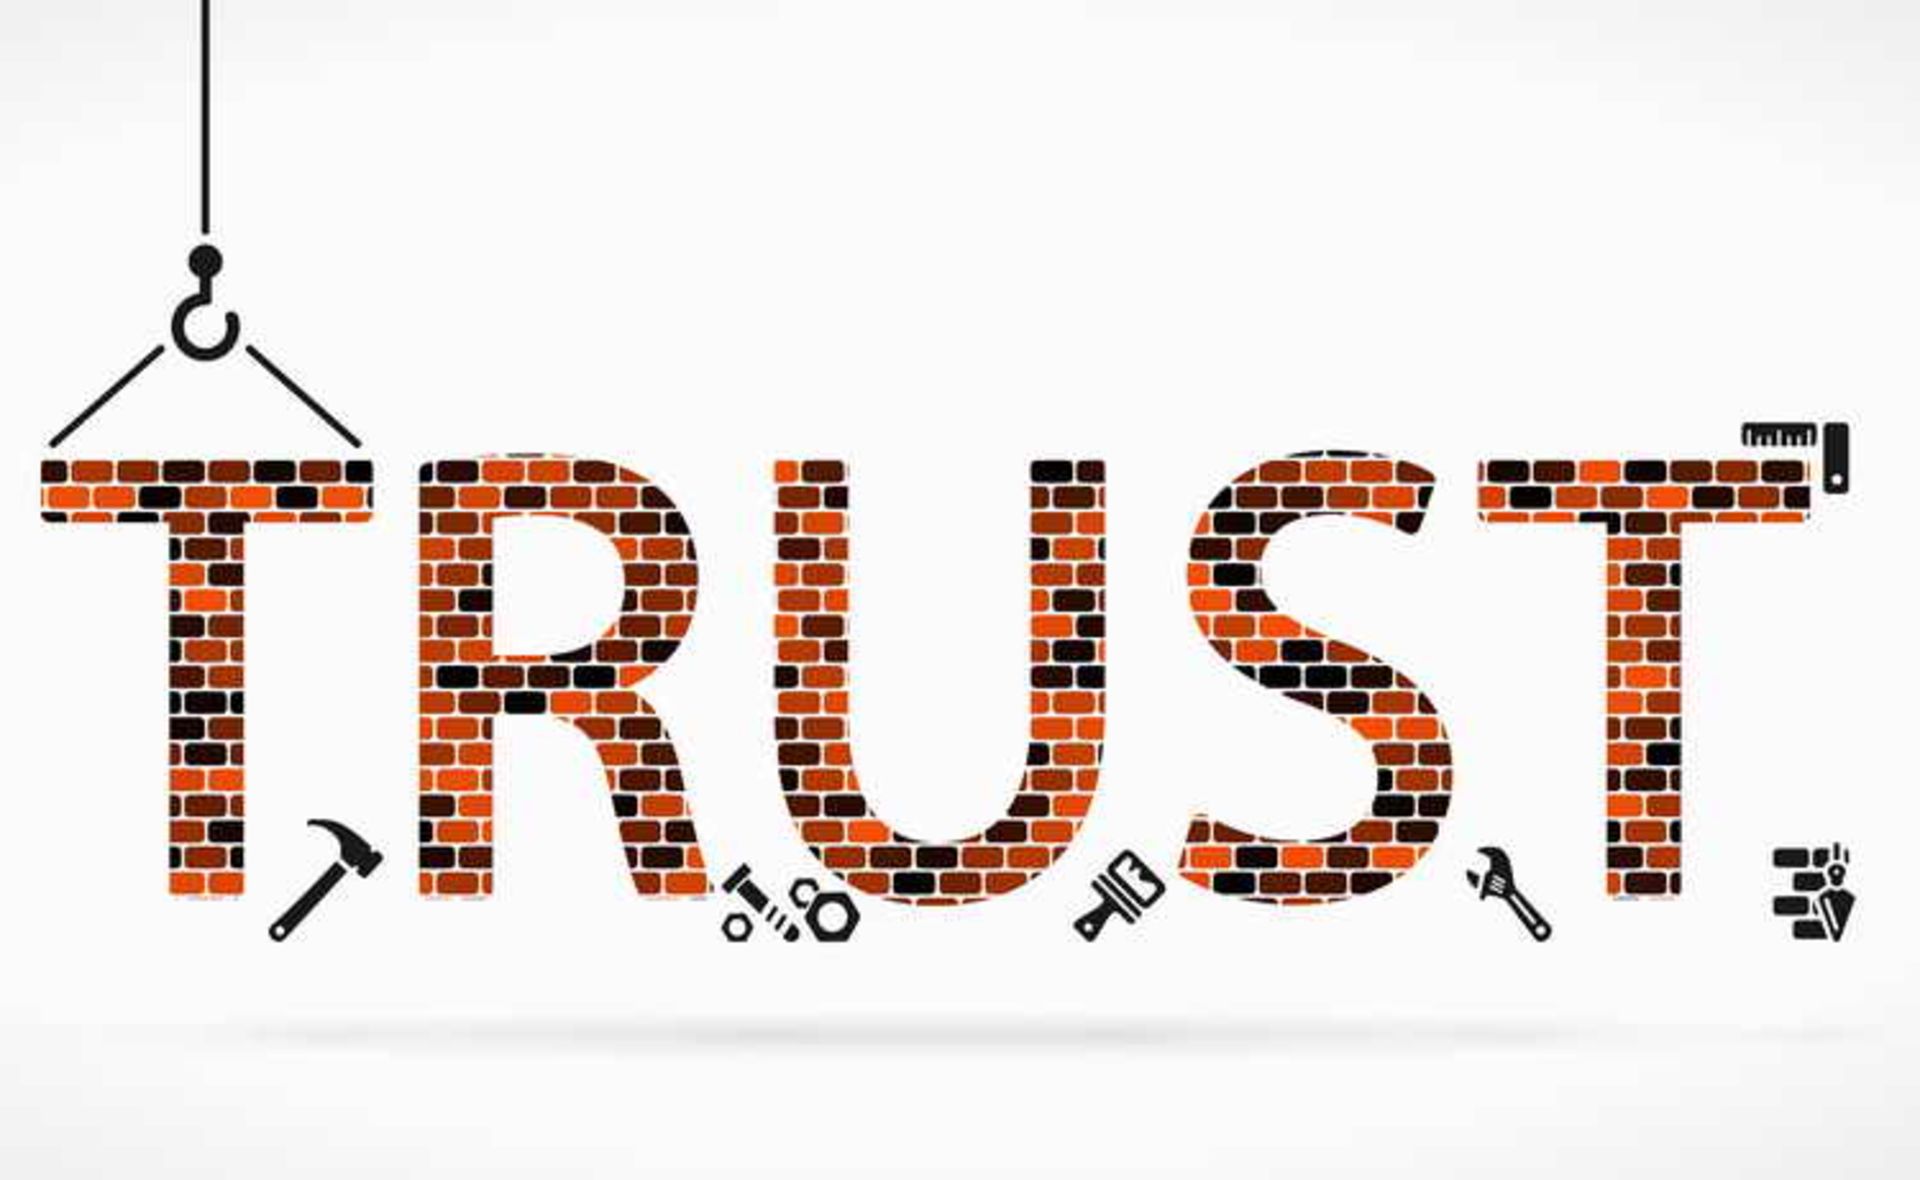  Increase trust